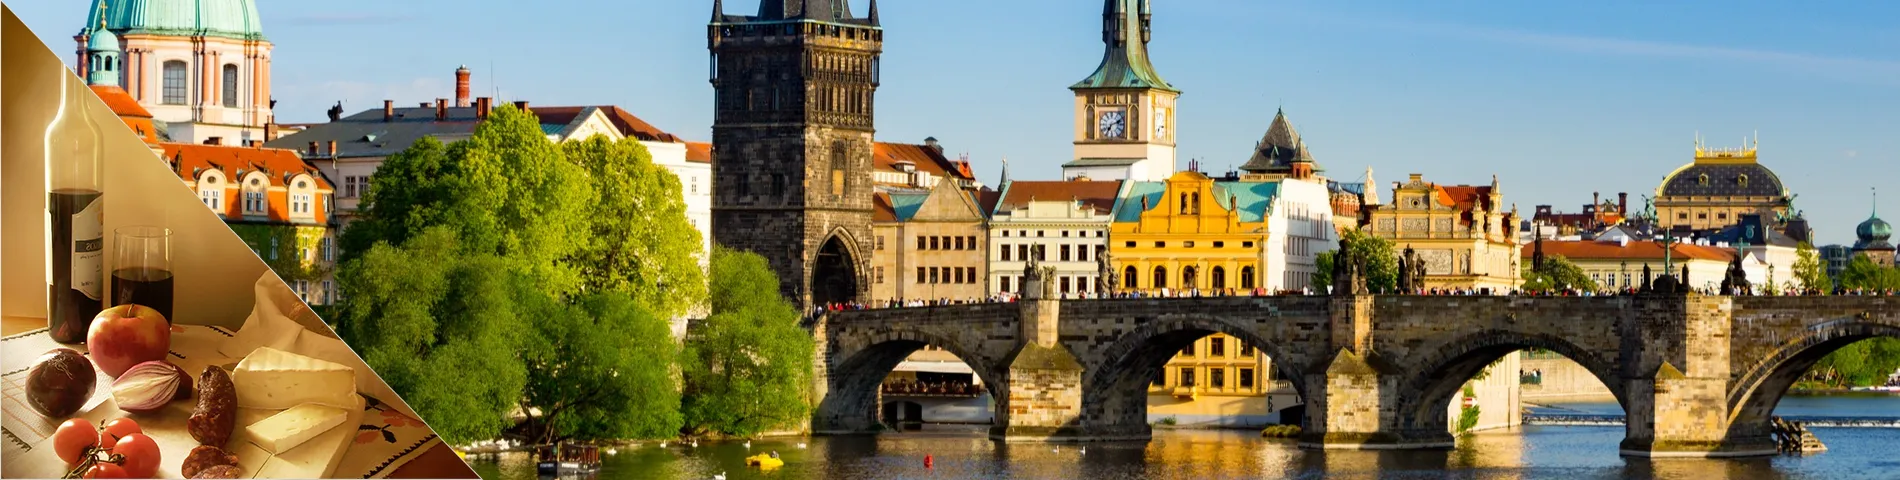 Praga - Txec i Cultura